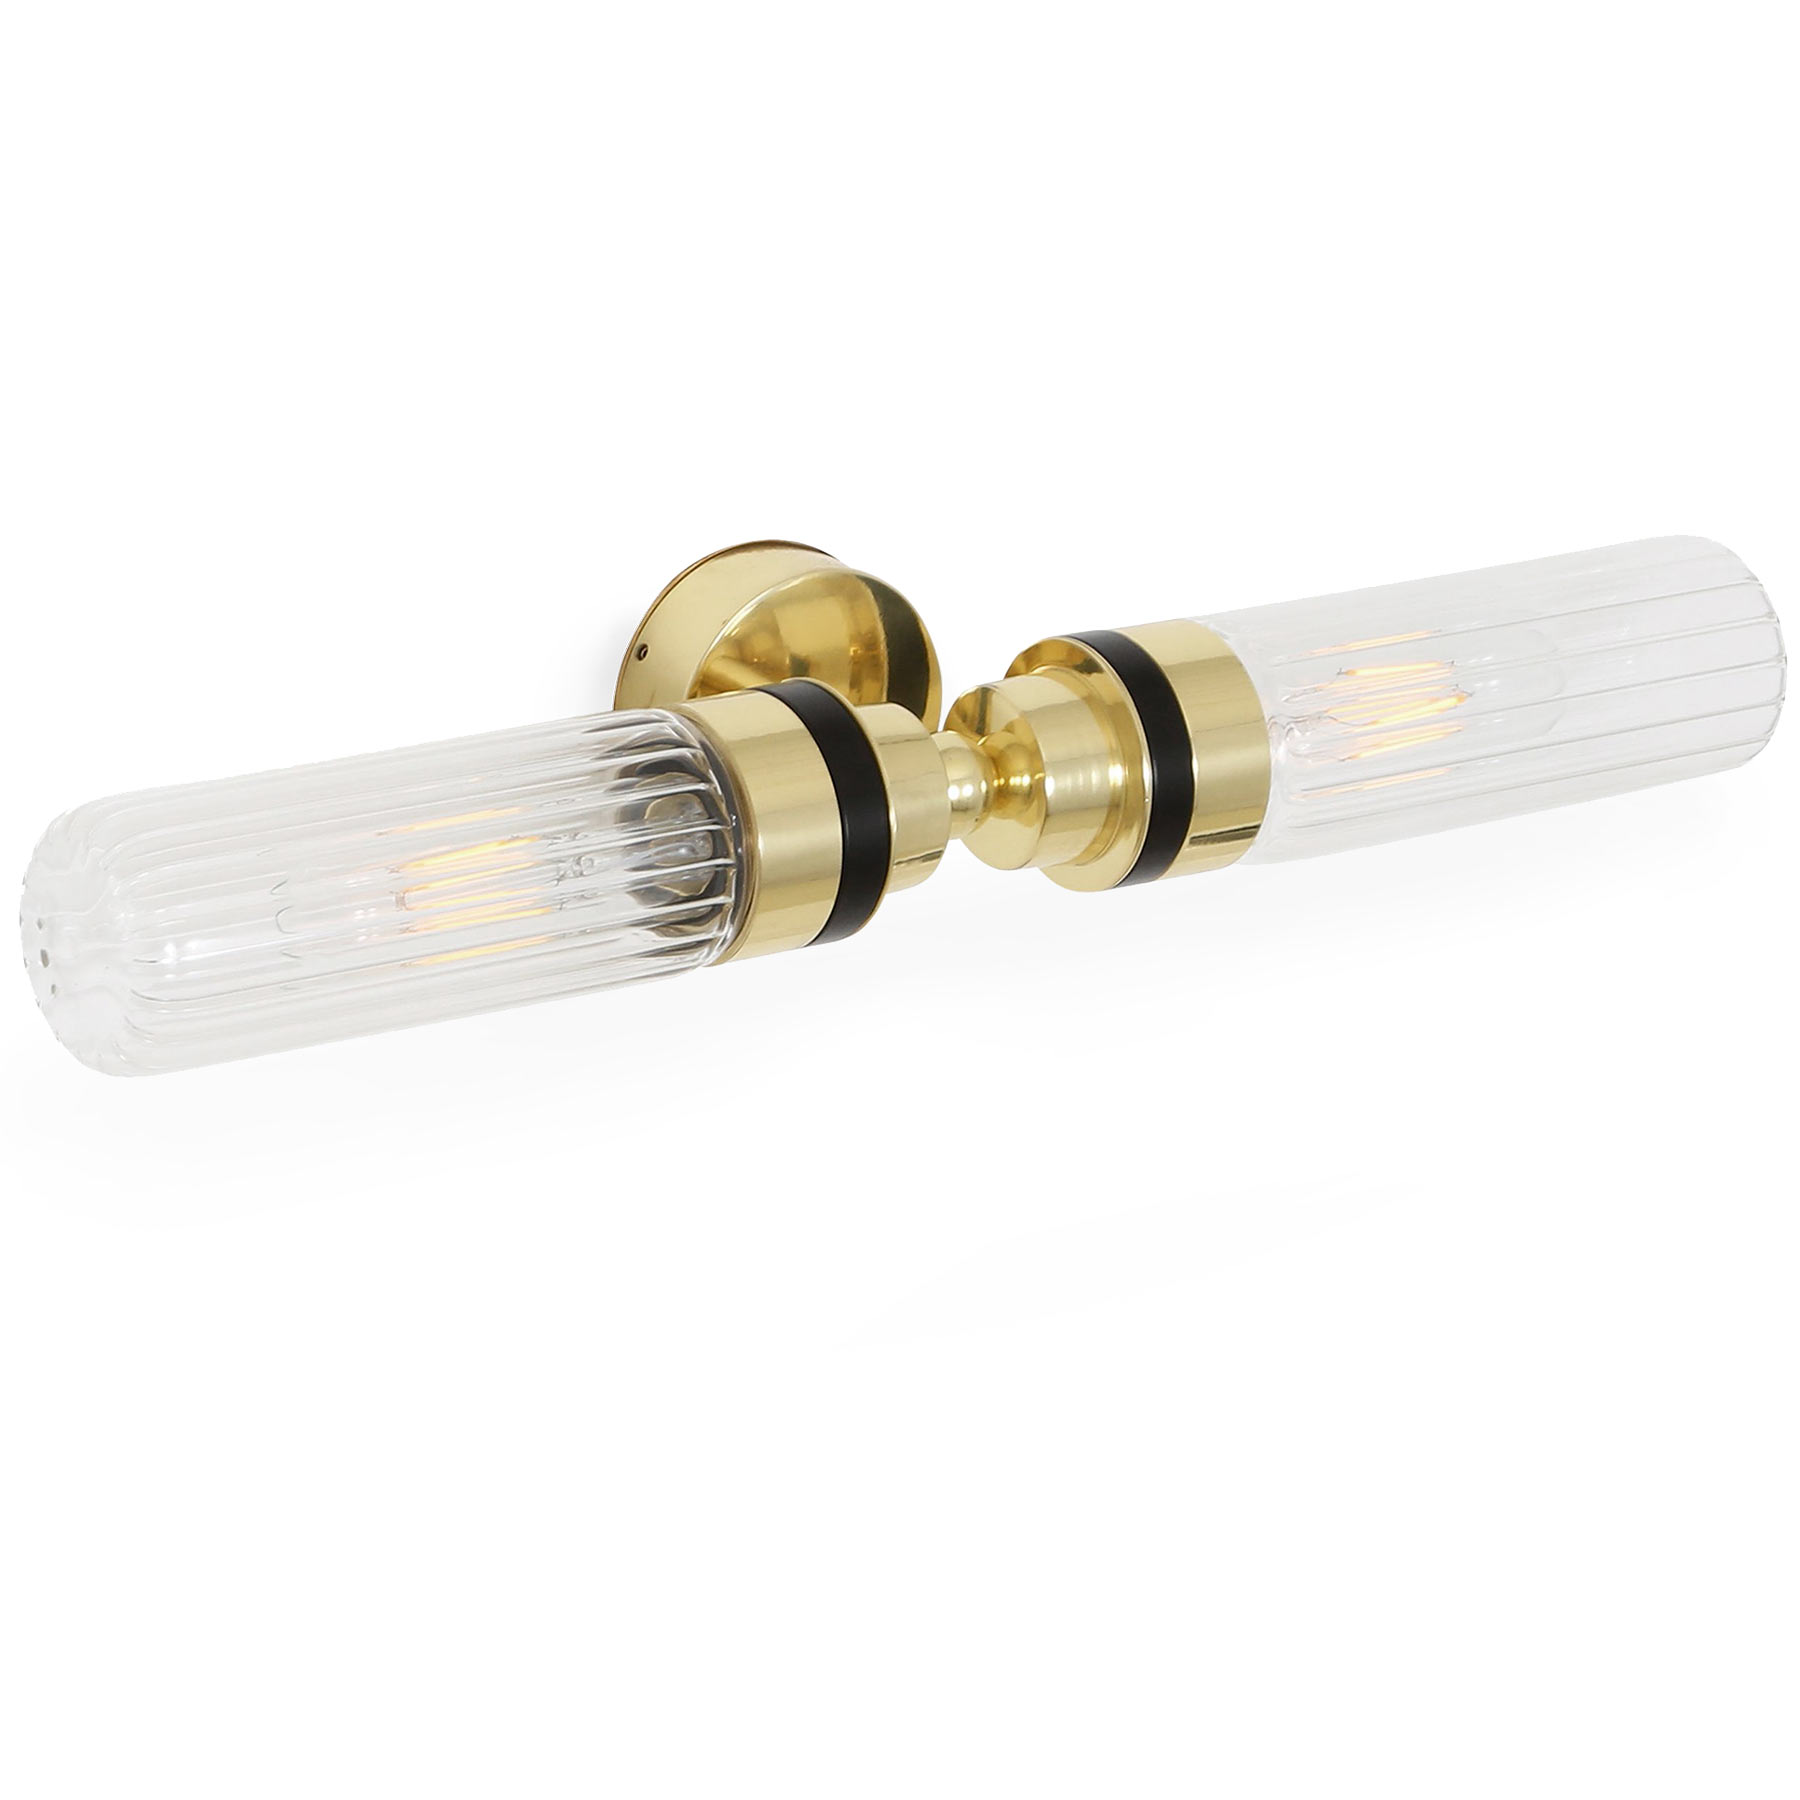 Spiegel-Wandlampe mit zwei Glaskolben (klar oder prismatisch), IP65: Hier: Messing poliert, mit gerillten Glas-Zylindern